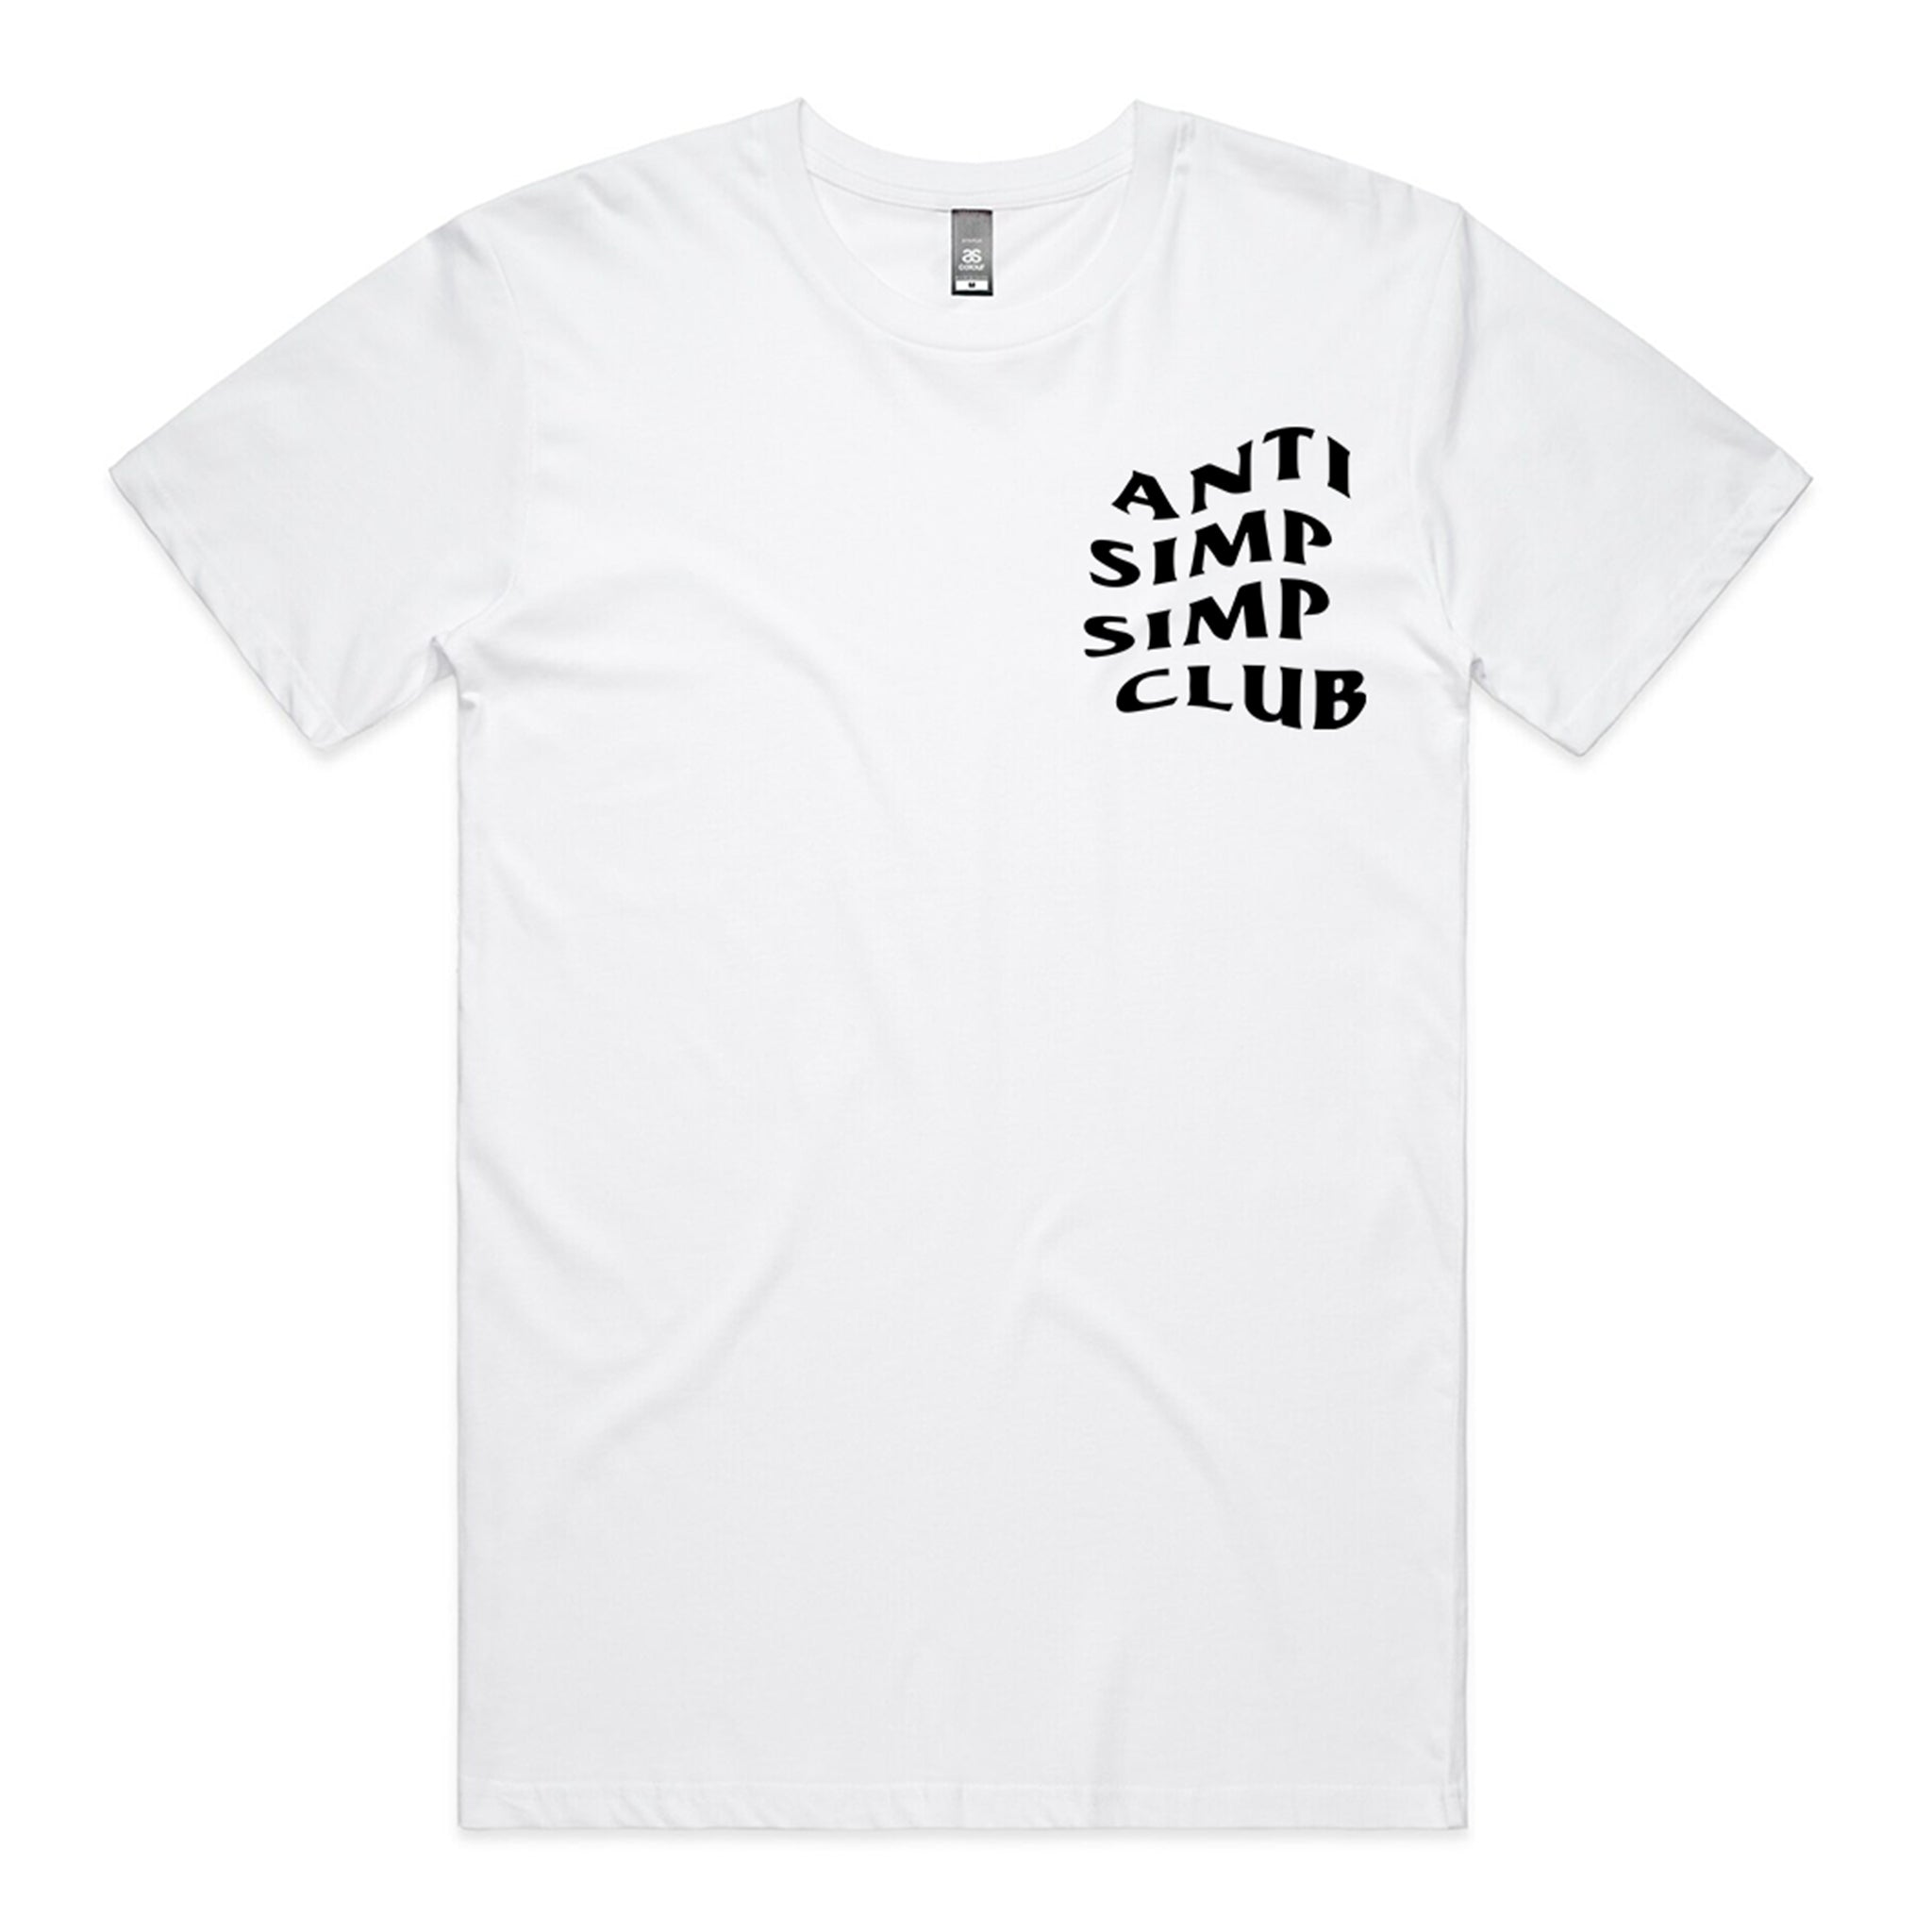 Anti Simp Simp Club Tee